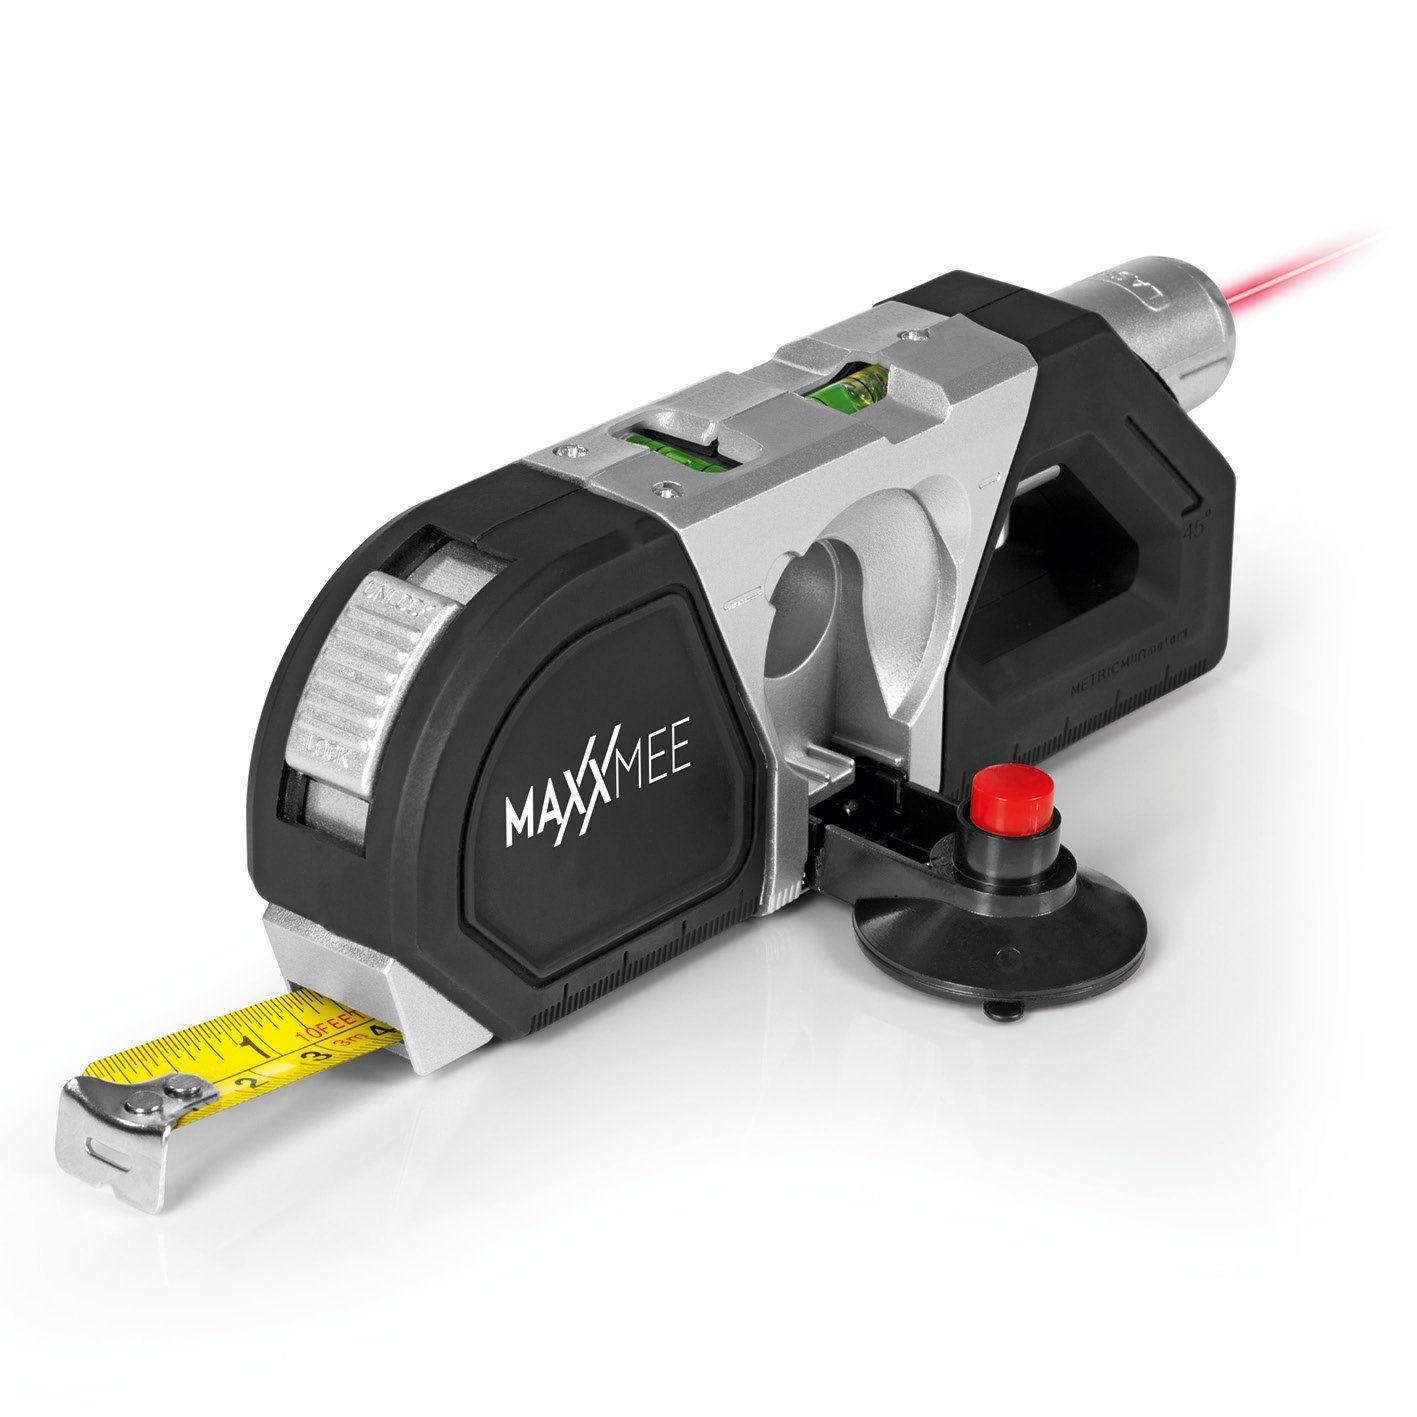 MAXXMEE Laserwasserwaage »Laser-Waage - Ausrichten per Laser für eine  Entfernung bis zu 10m« online kaufen | OTTO